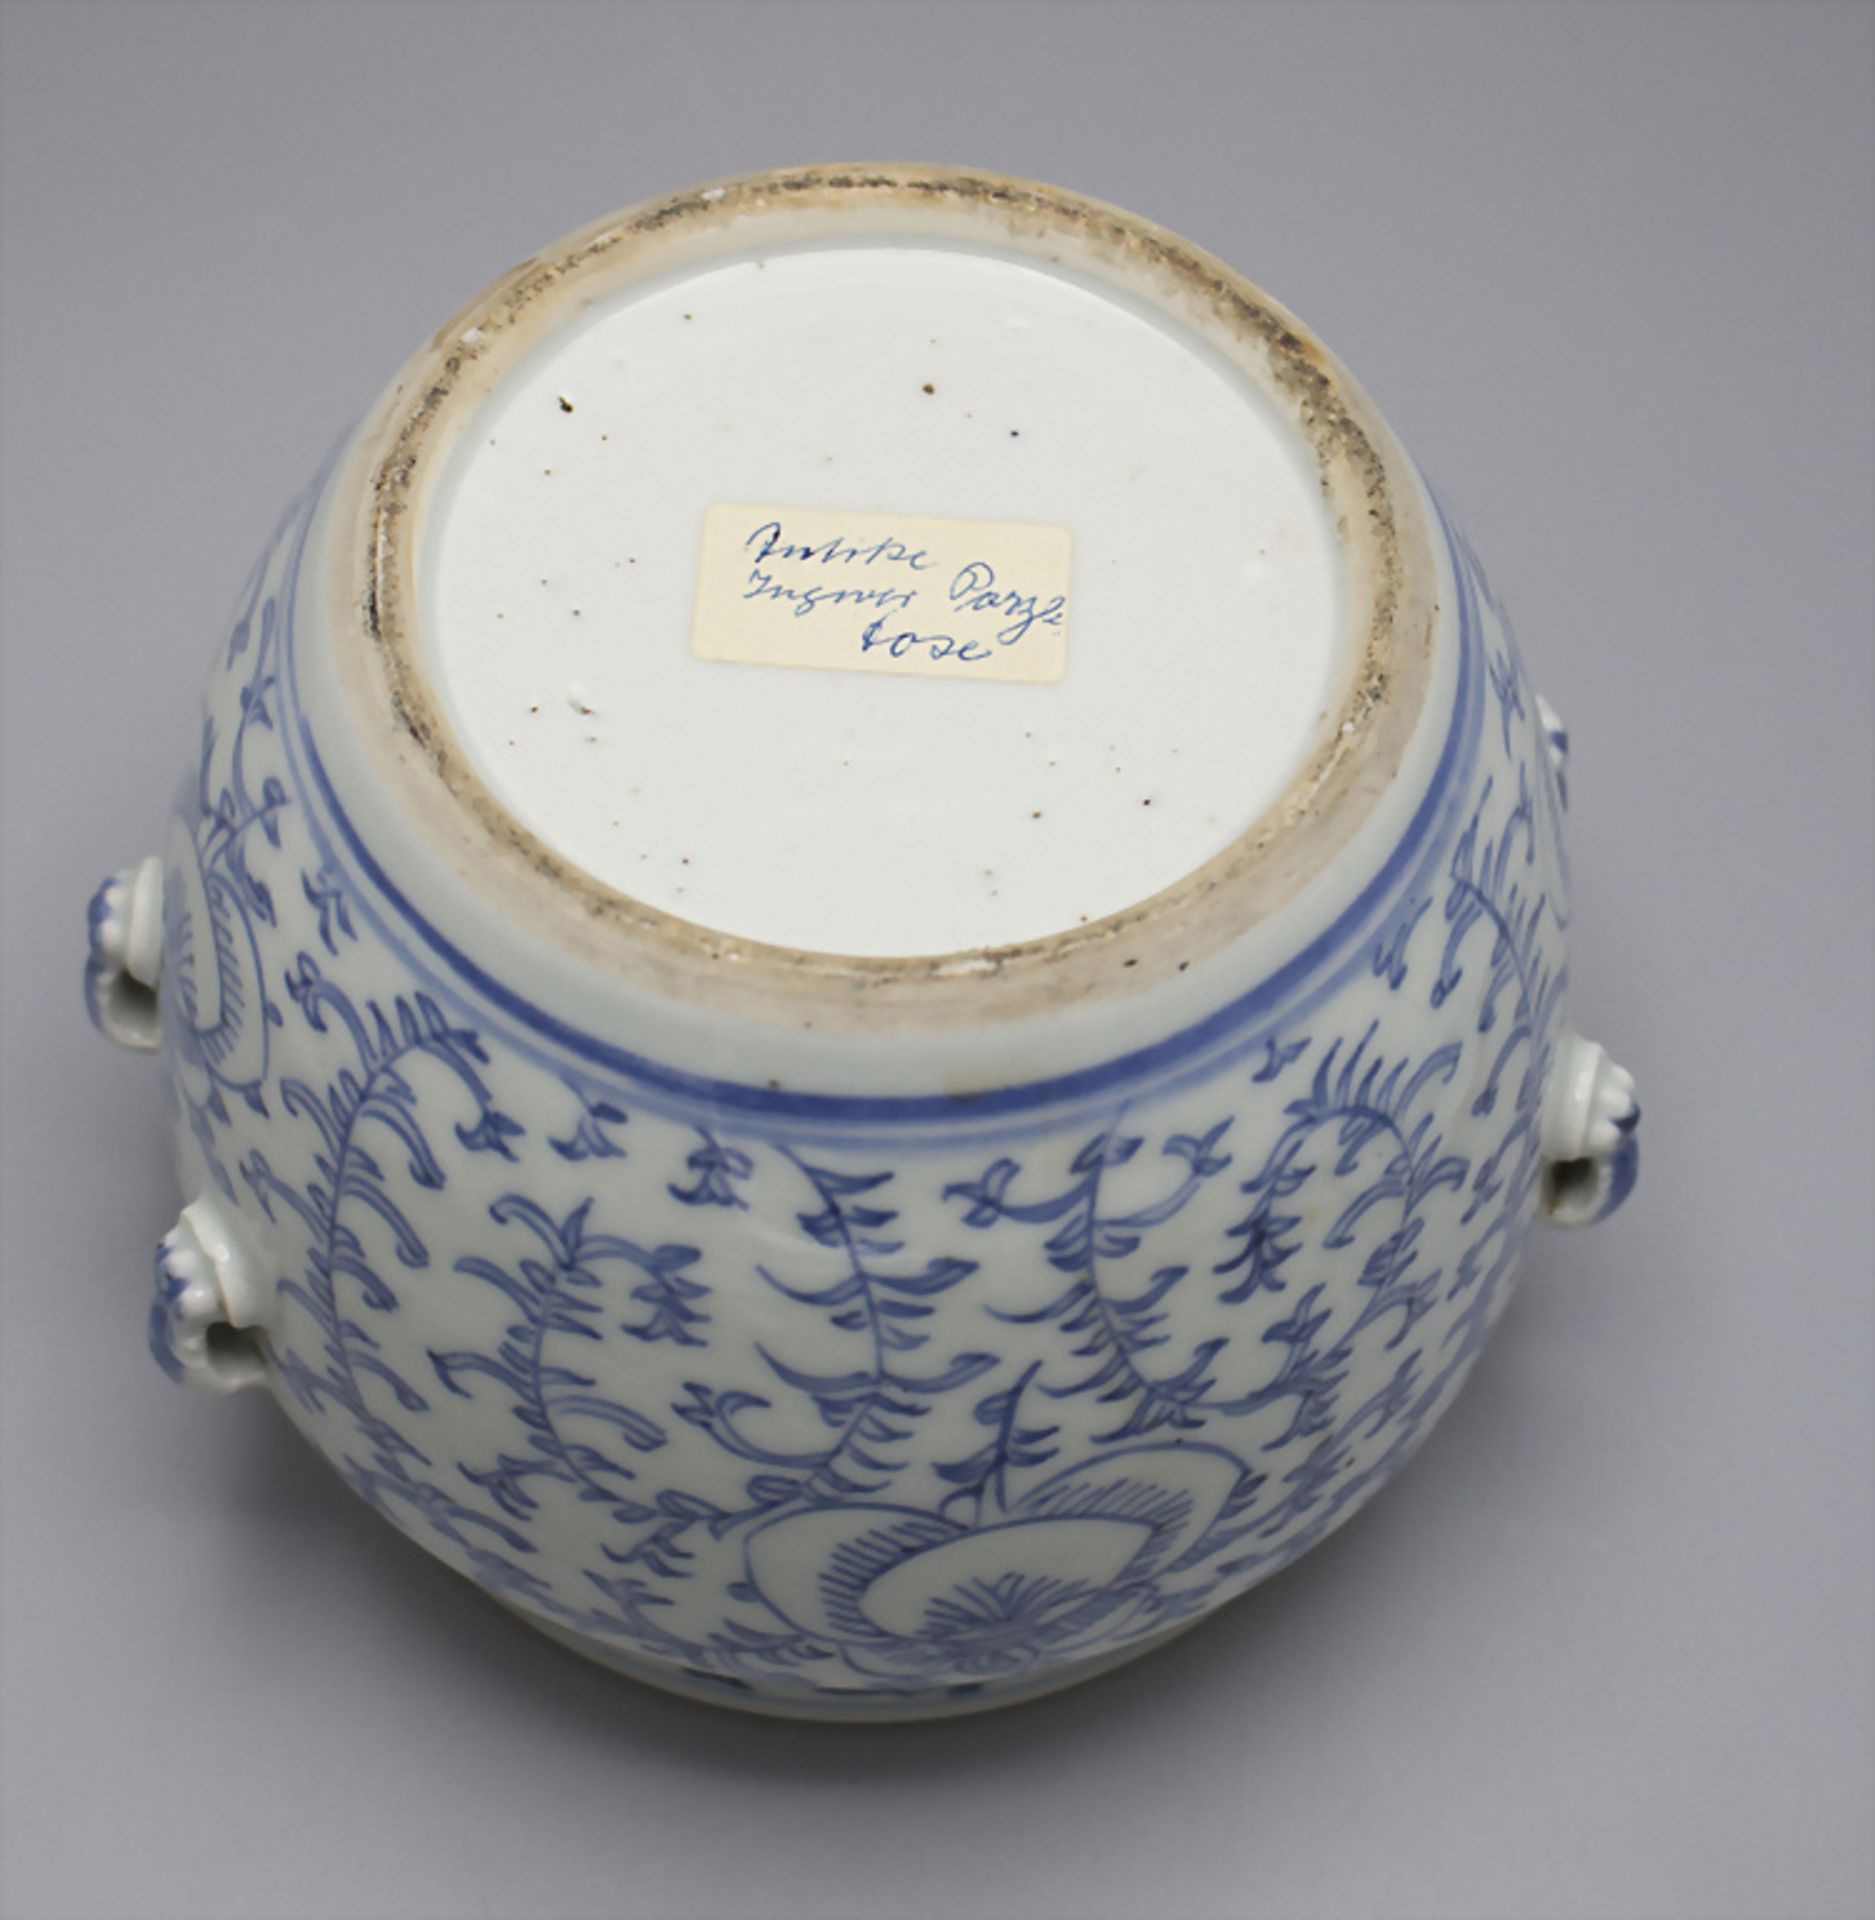 Porzellan Ingwertopf / A porcelain ginger pot, China - Image 4 of 6